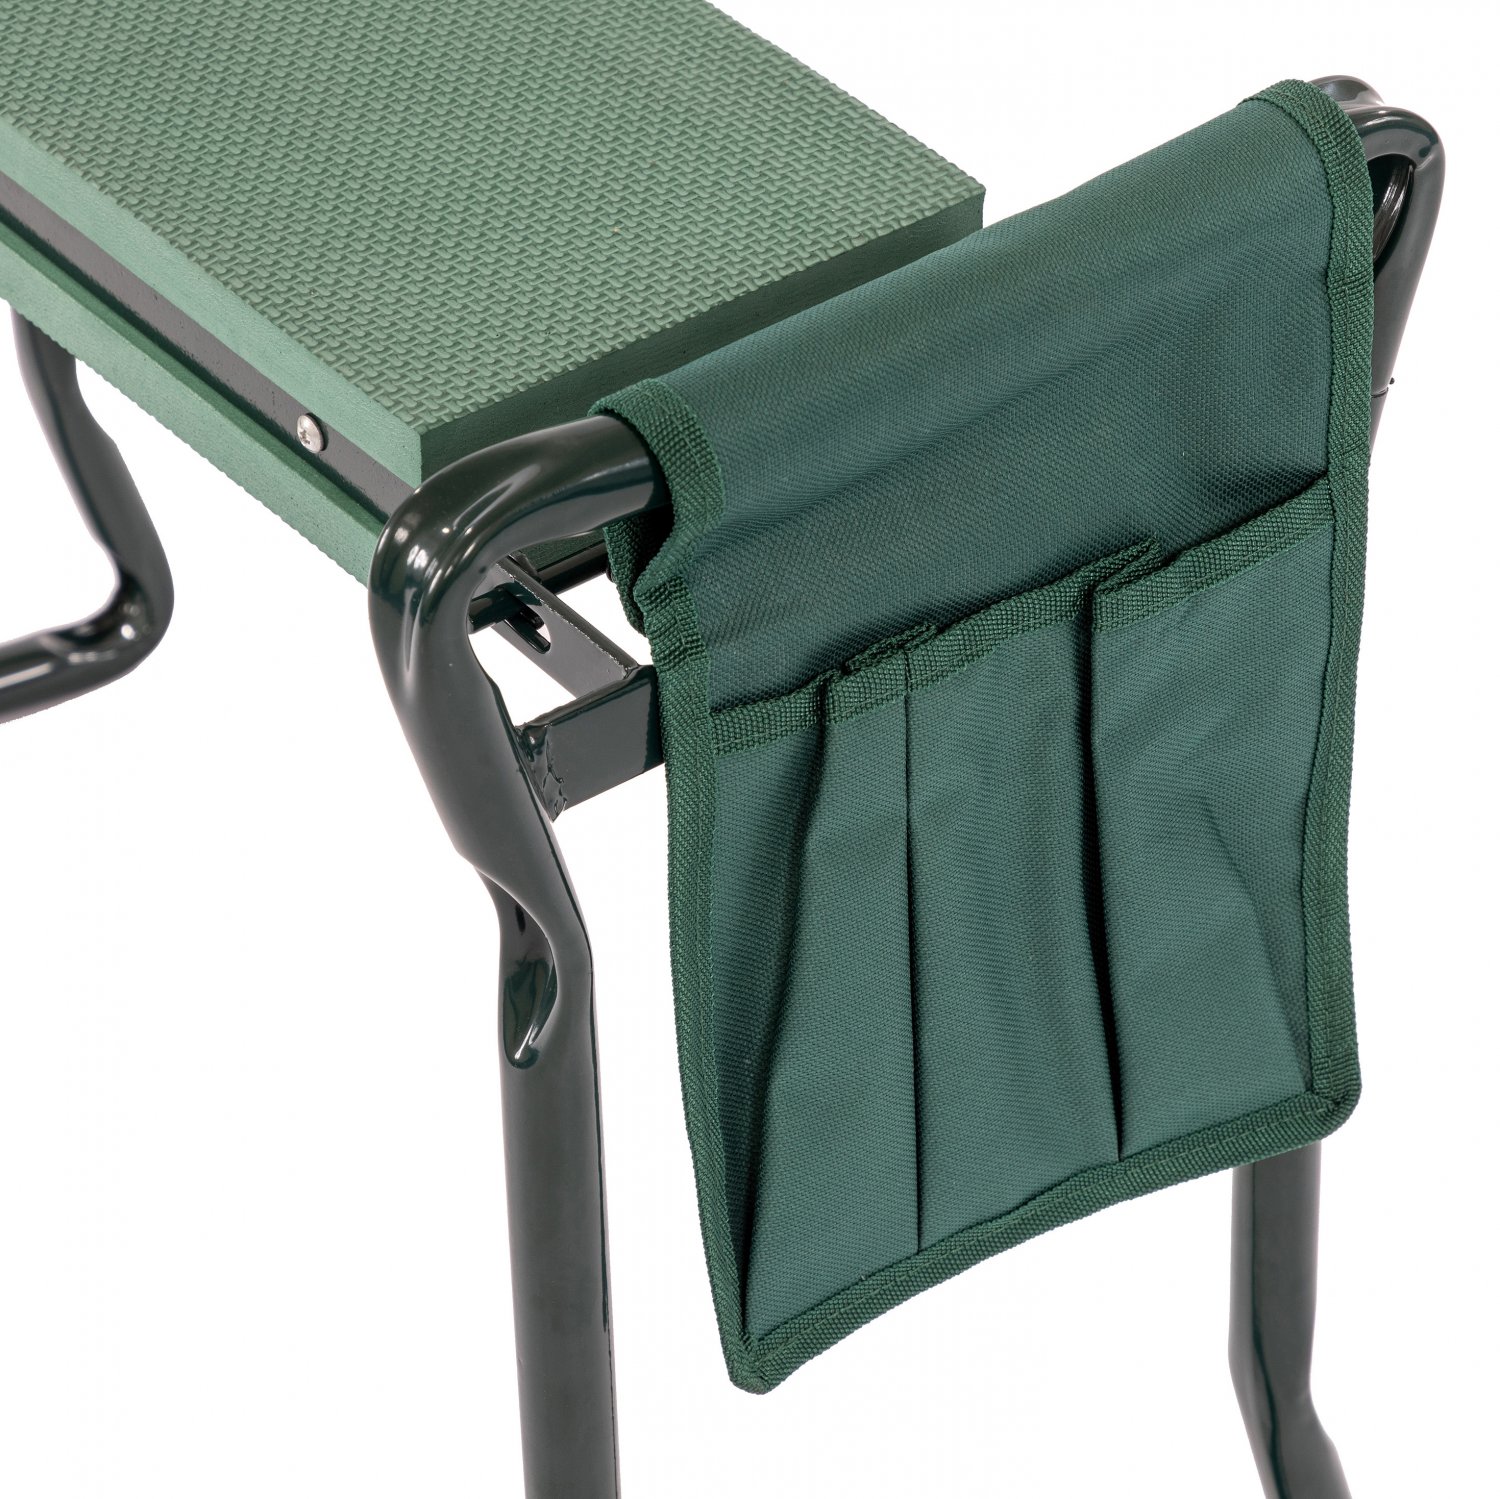 Only Tool Bag Rubywoo Garden Kneeler Tool Bags Foldable Garden Seat Tool Bag for Indoor and Outdoor Garden Kneeler Seat 